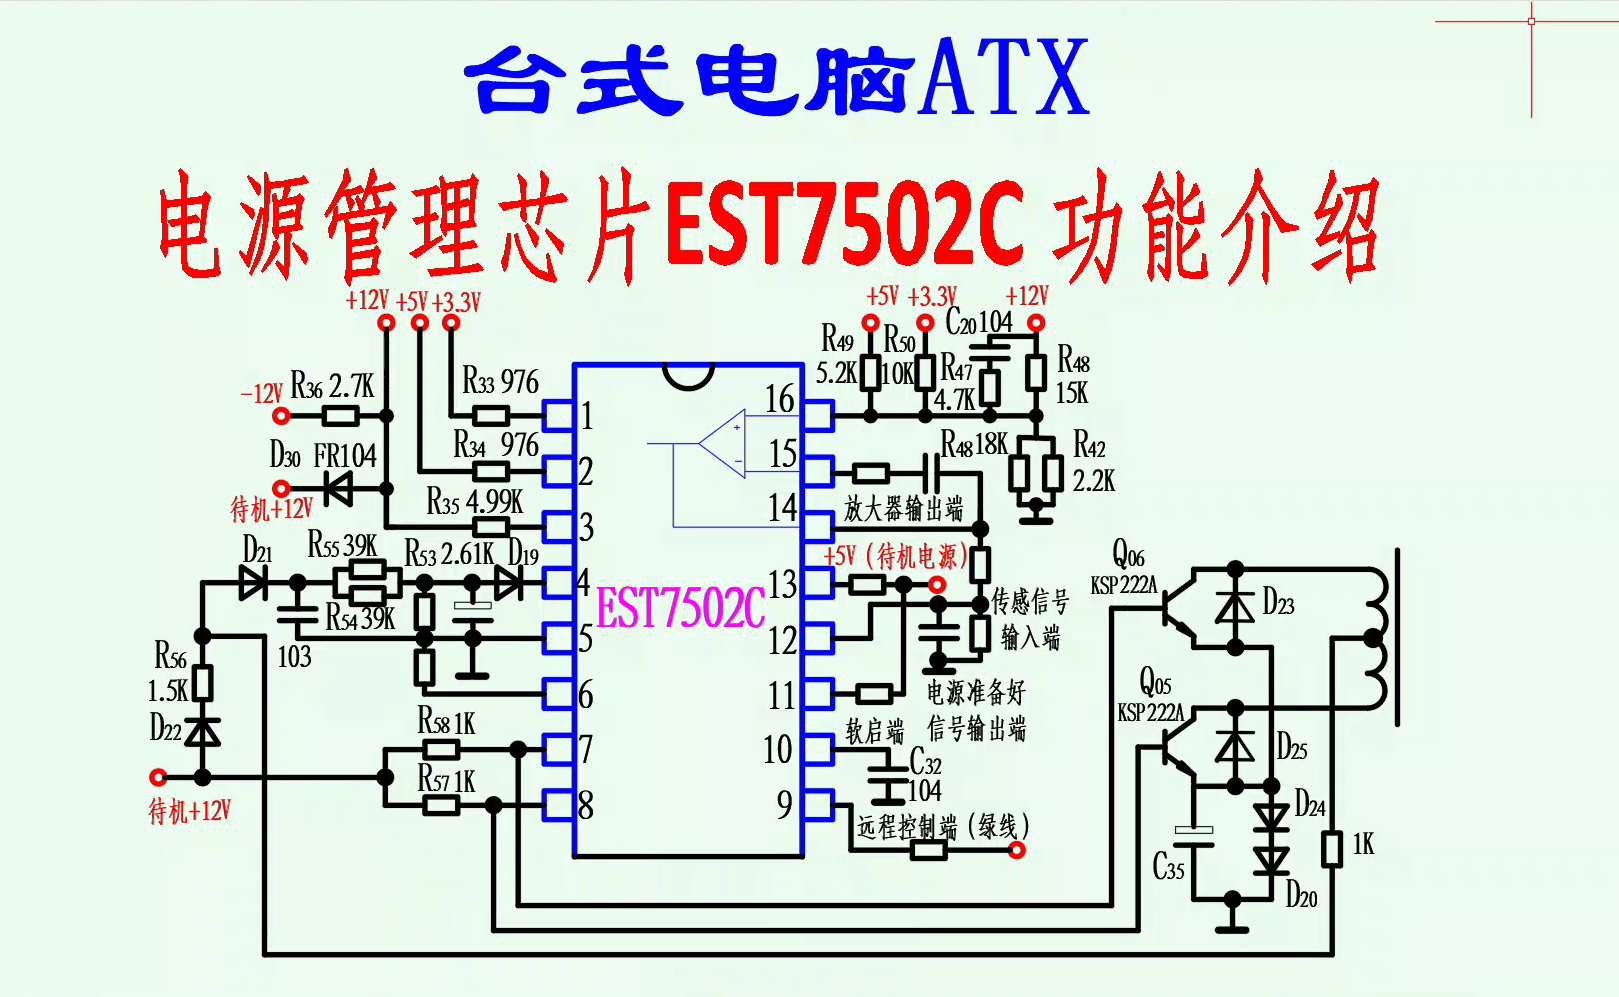 台式电脑ATX电源—电源管理芯片EST7502C 功能介绍